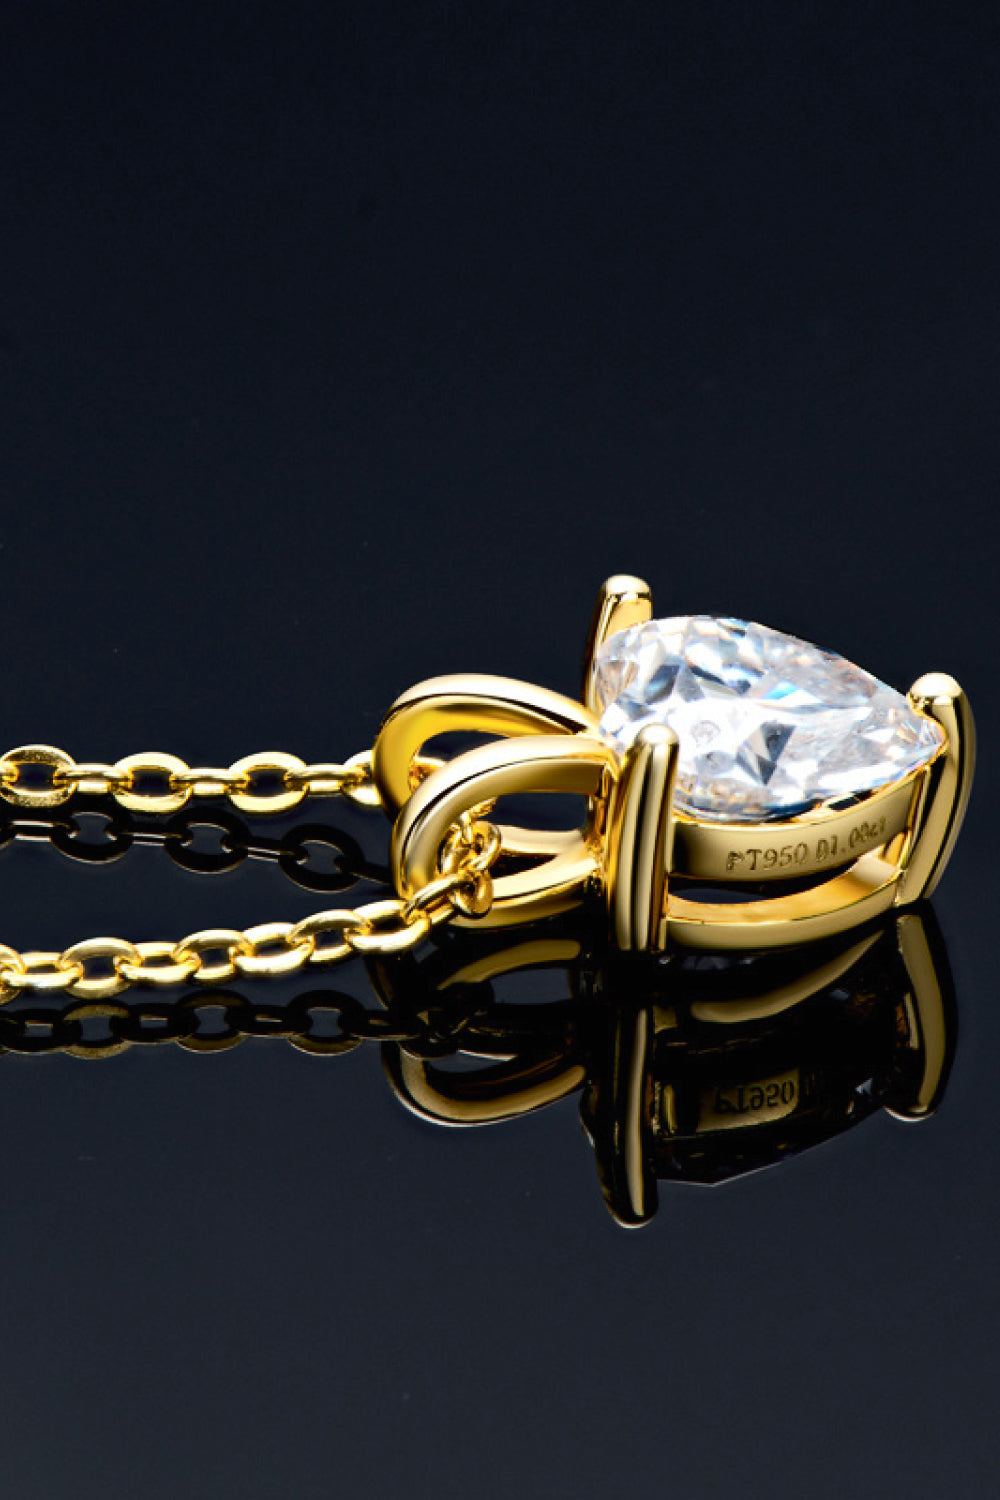 1 Carat Moissanite Heart-Shaped Pendant Necklace - DromedarShop.com Online Boutique